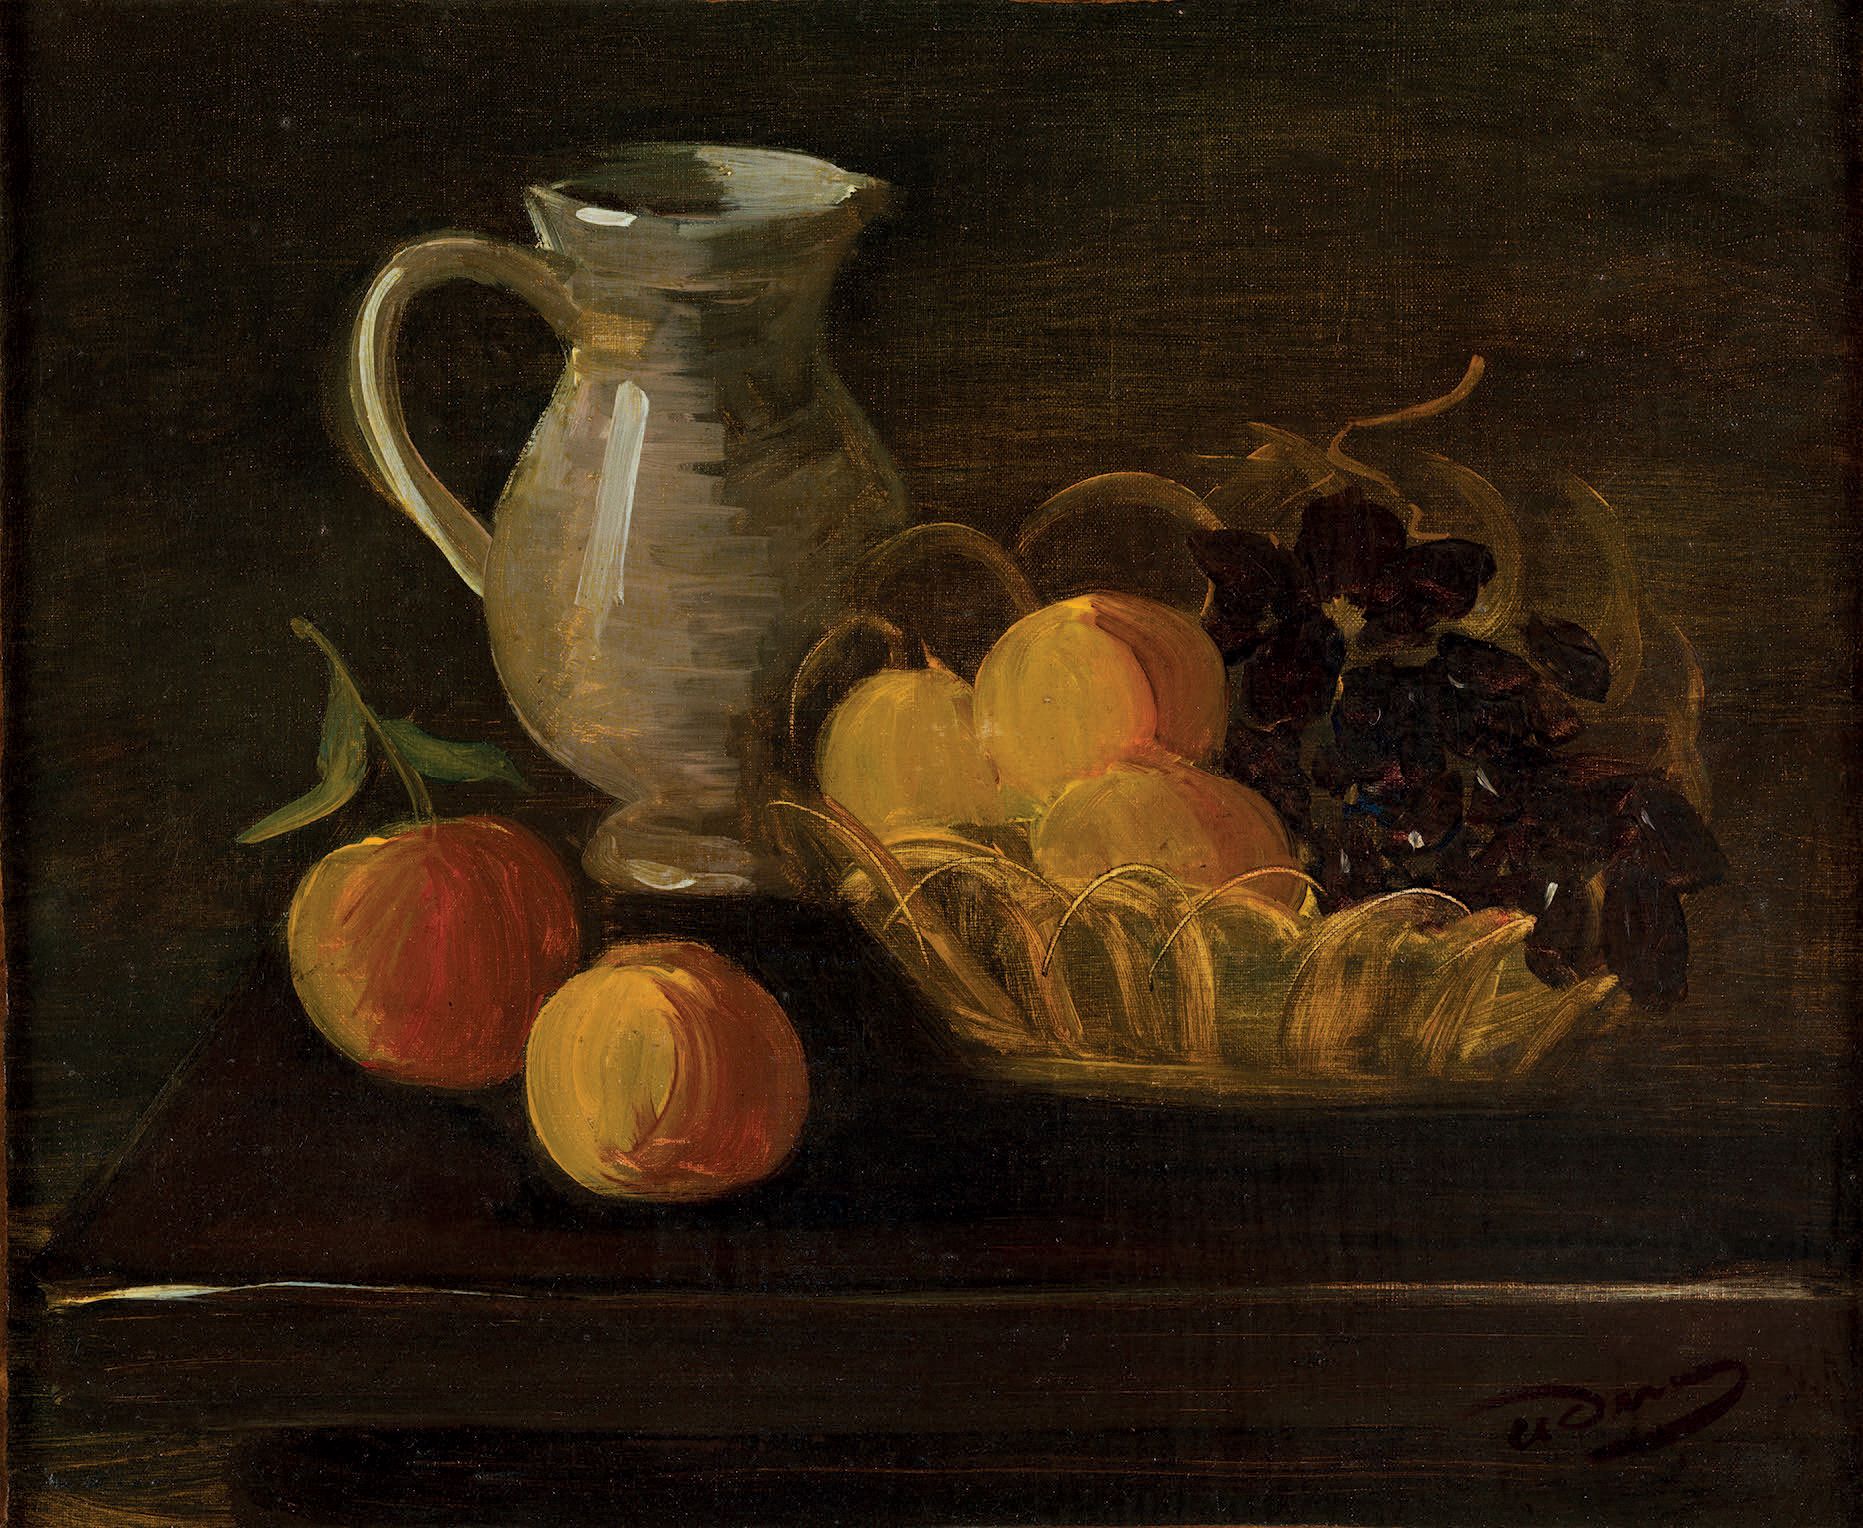 André DERAIN. 静物，水壶和水果。无日期[约1930年]。
布面油画（37 x 44厘米），右下方有签名。
安德烈-德兰（1880-1954）的美丽&hellip;